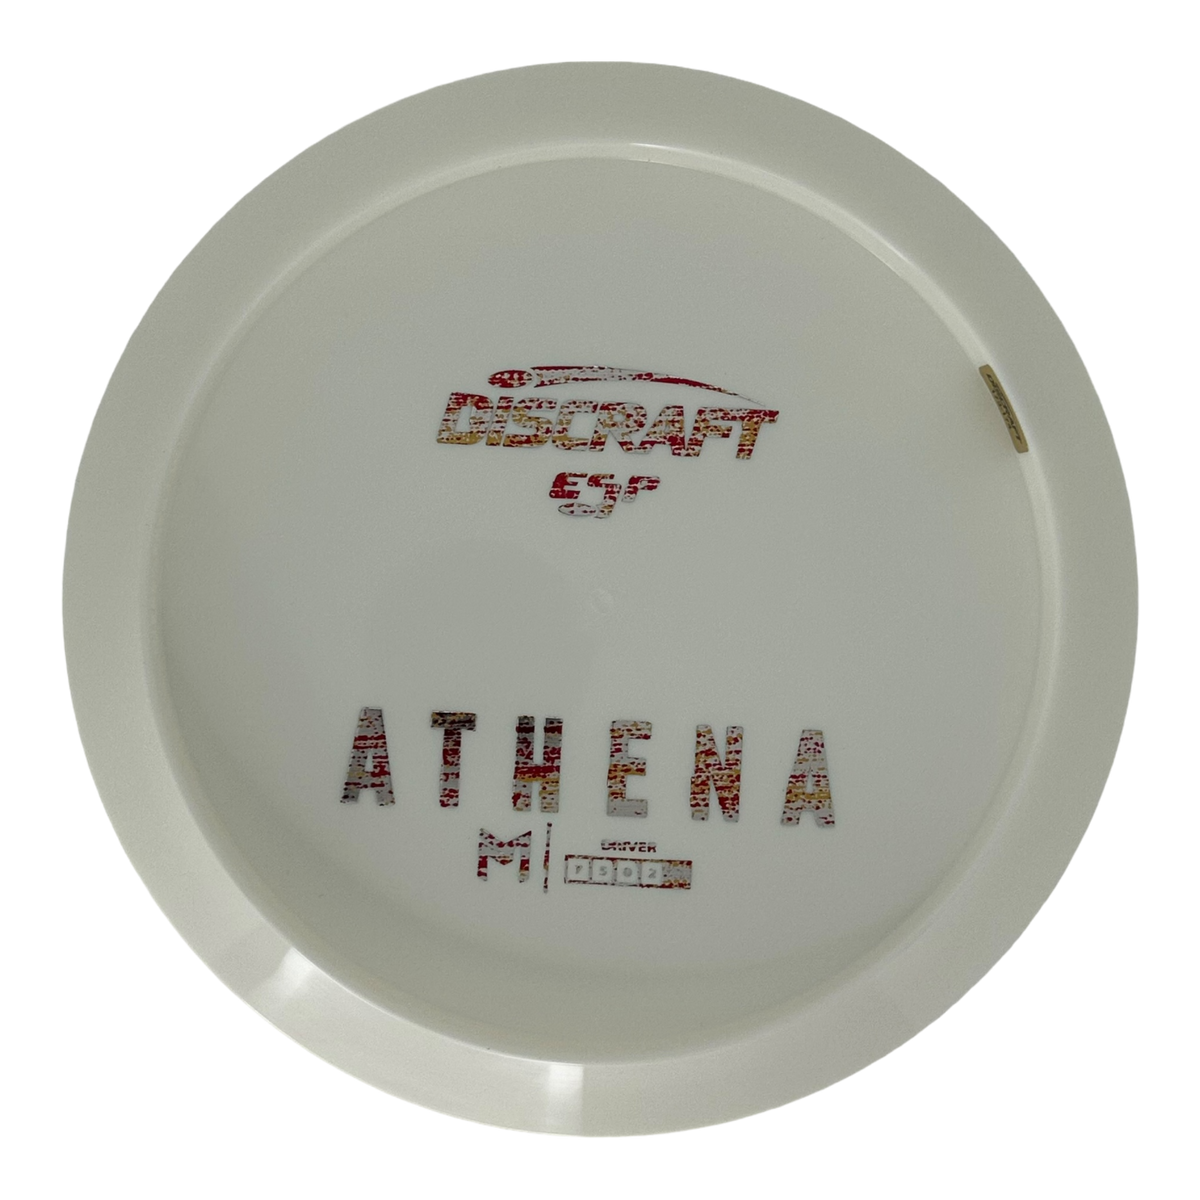 Discraft Paul McBeth White ESP Athena - Bottom Stamp